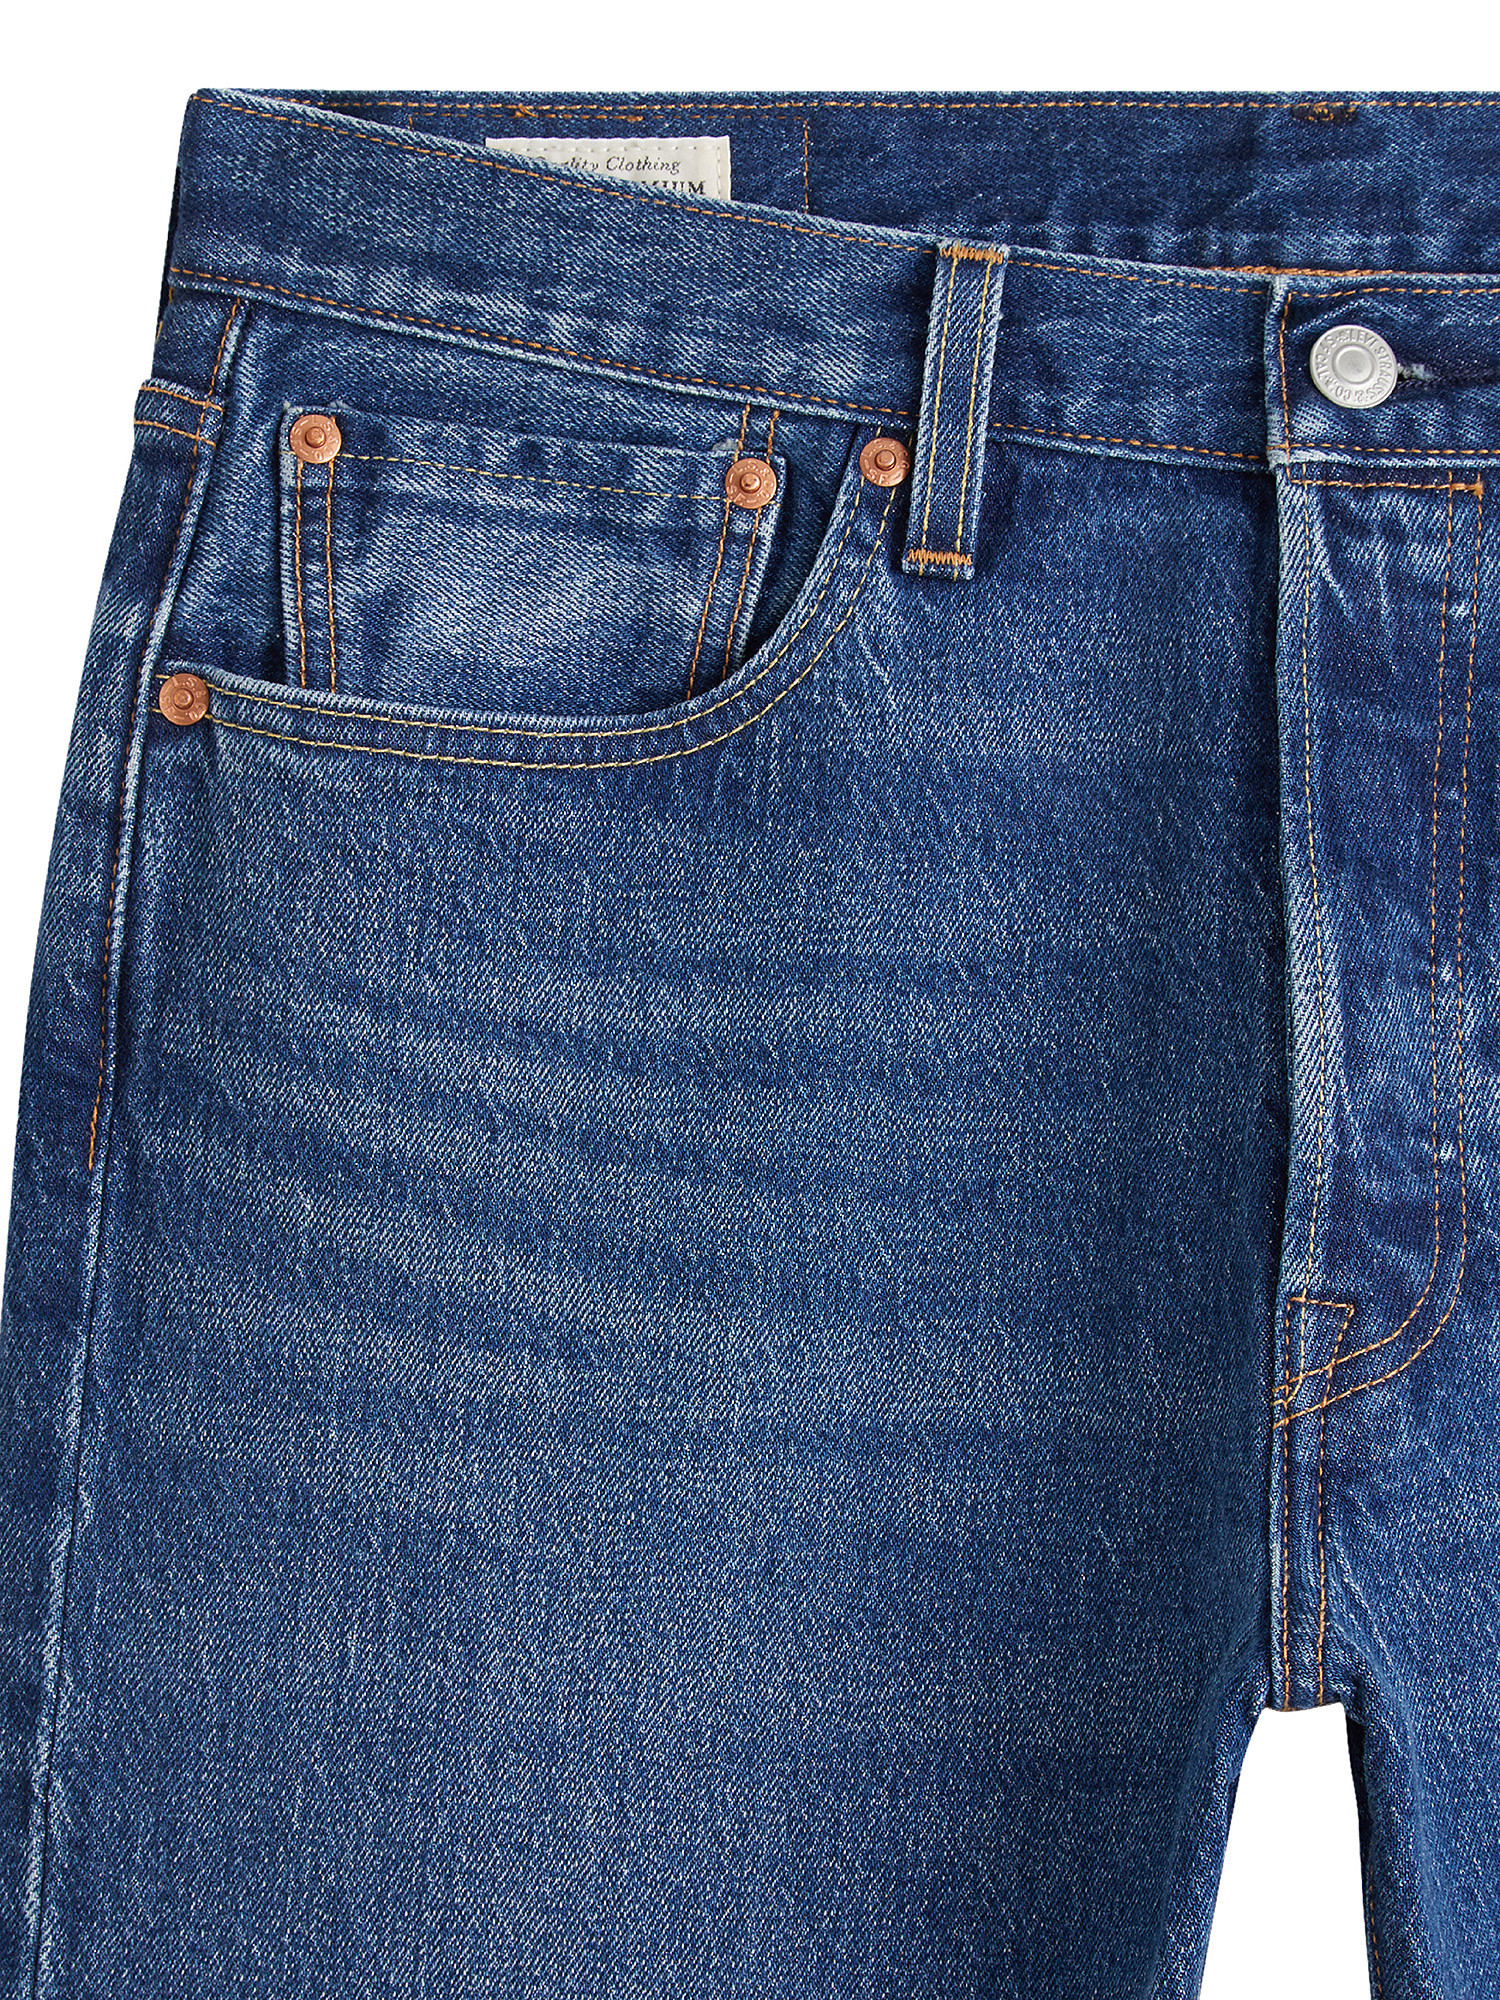 501 original jeans, Blu, large image number 2